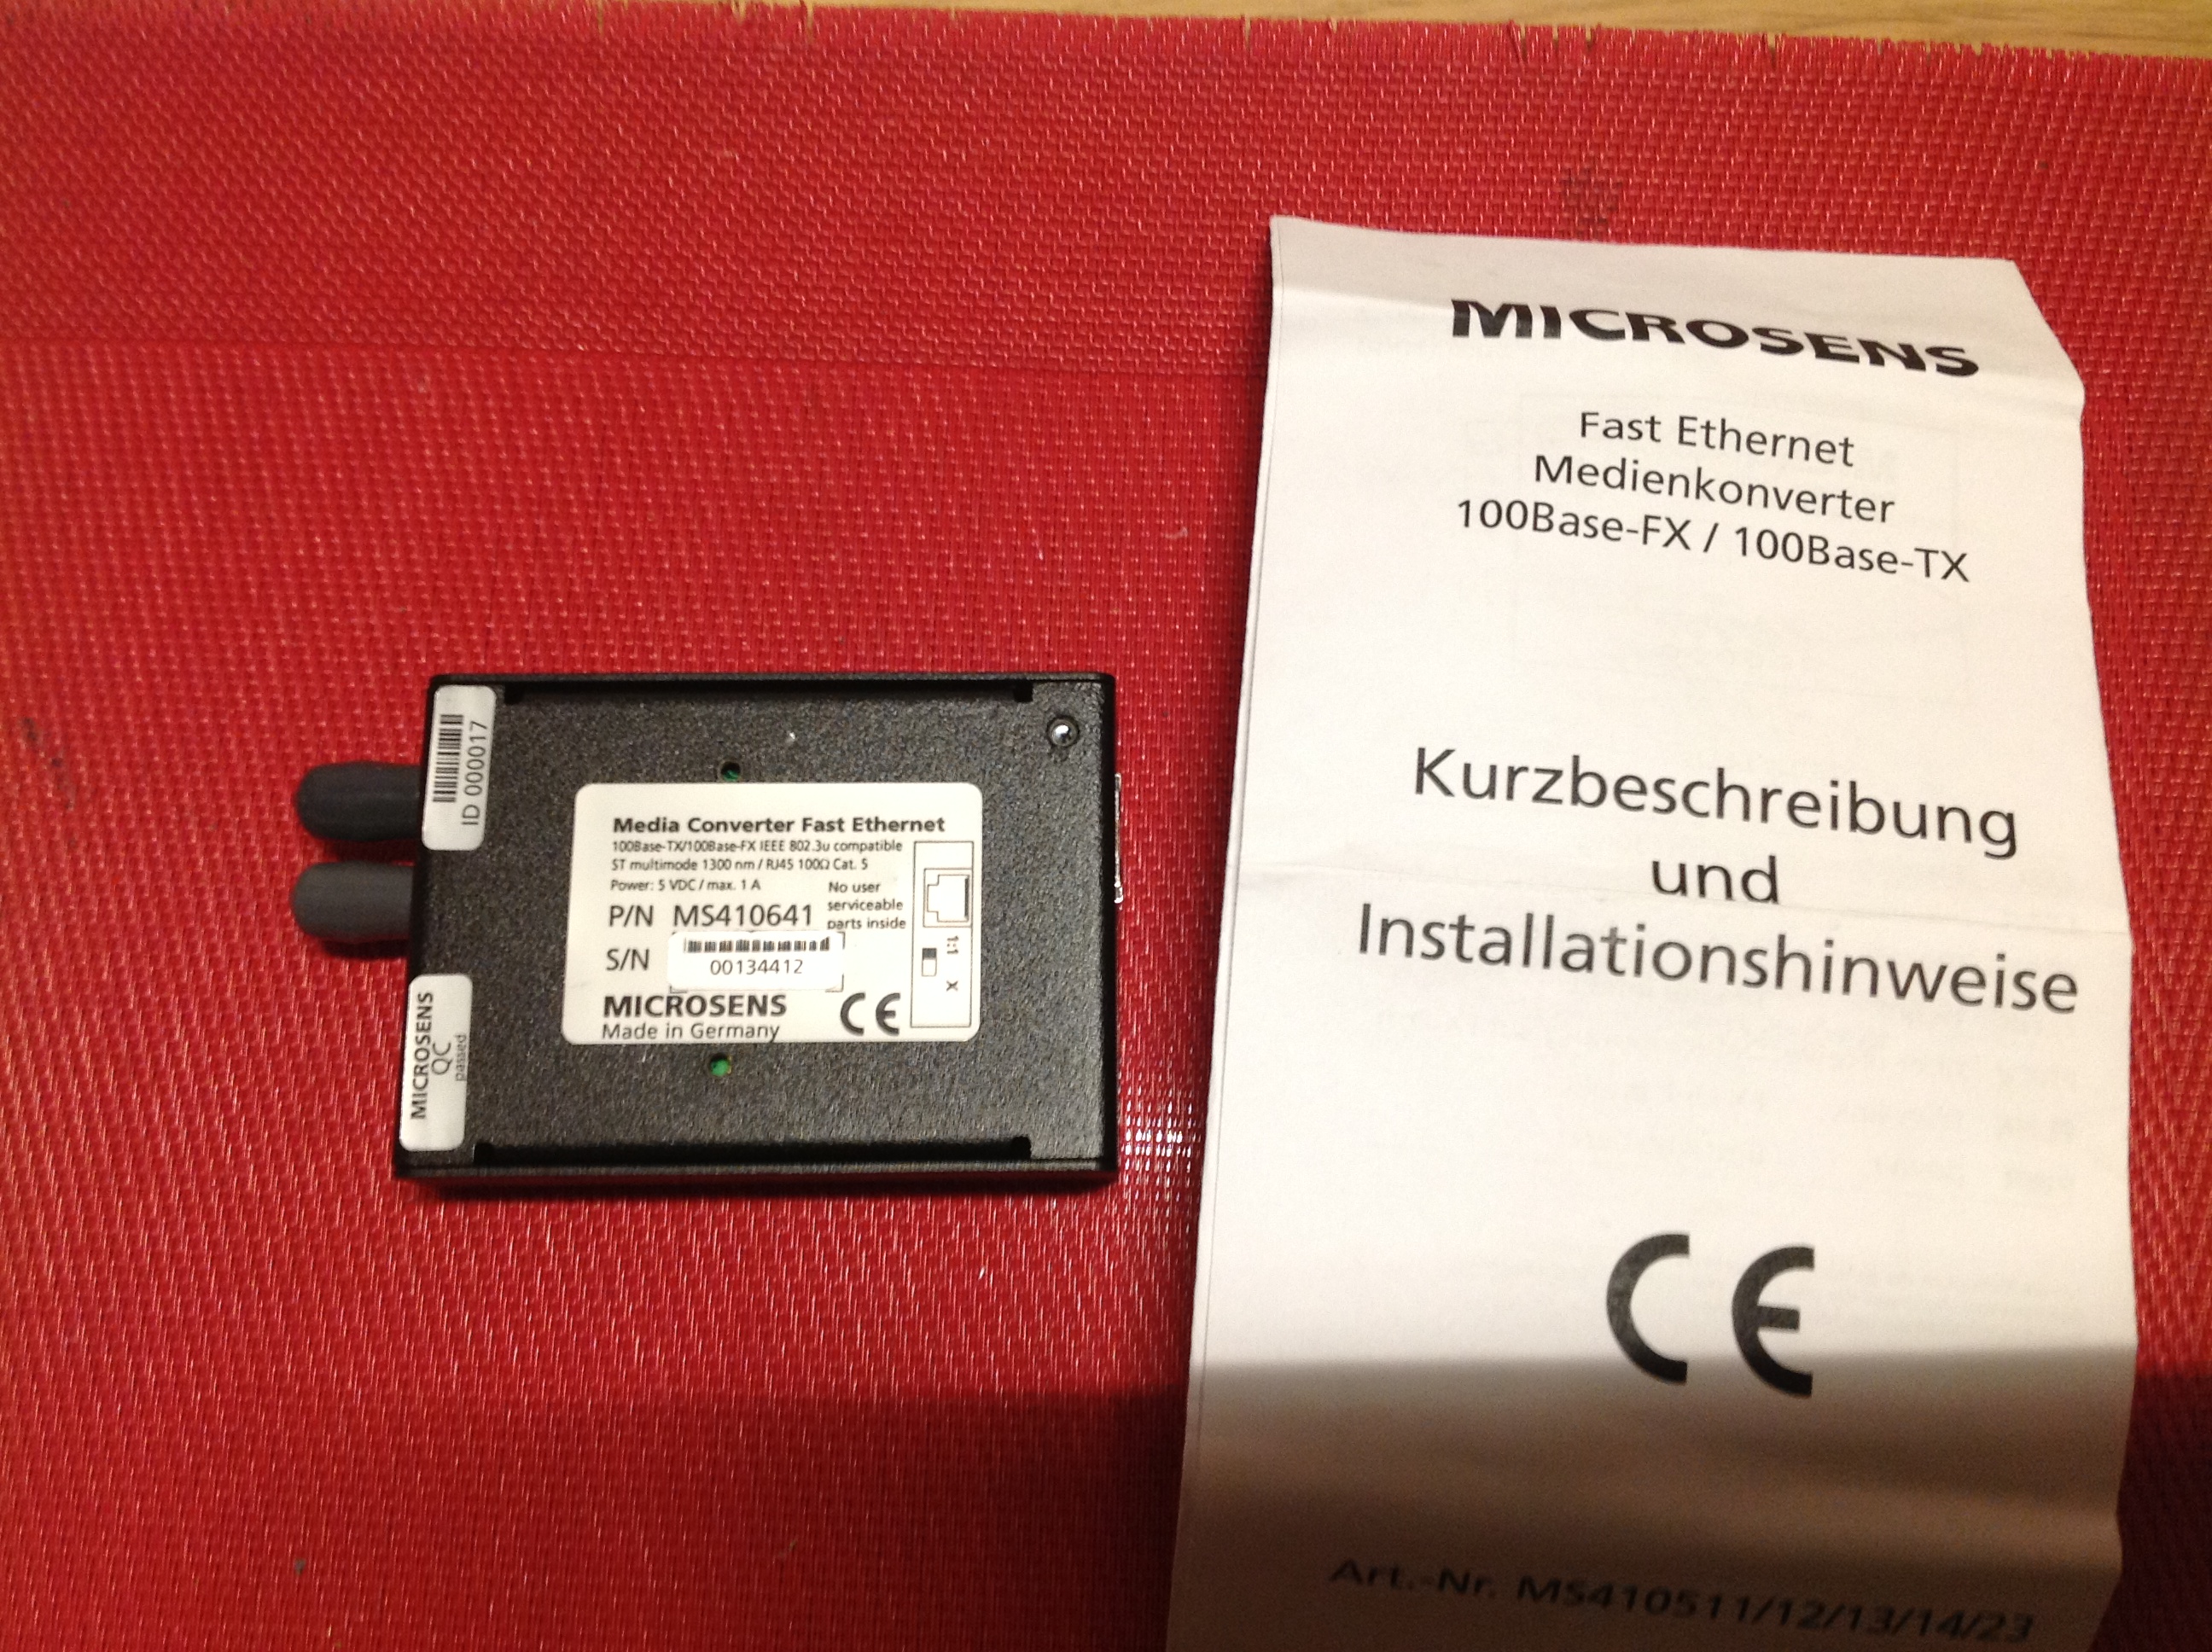 Media Converter Microsens 100Base-FX/100 Base-TX ST multimode 1300 nm